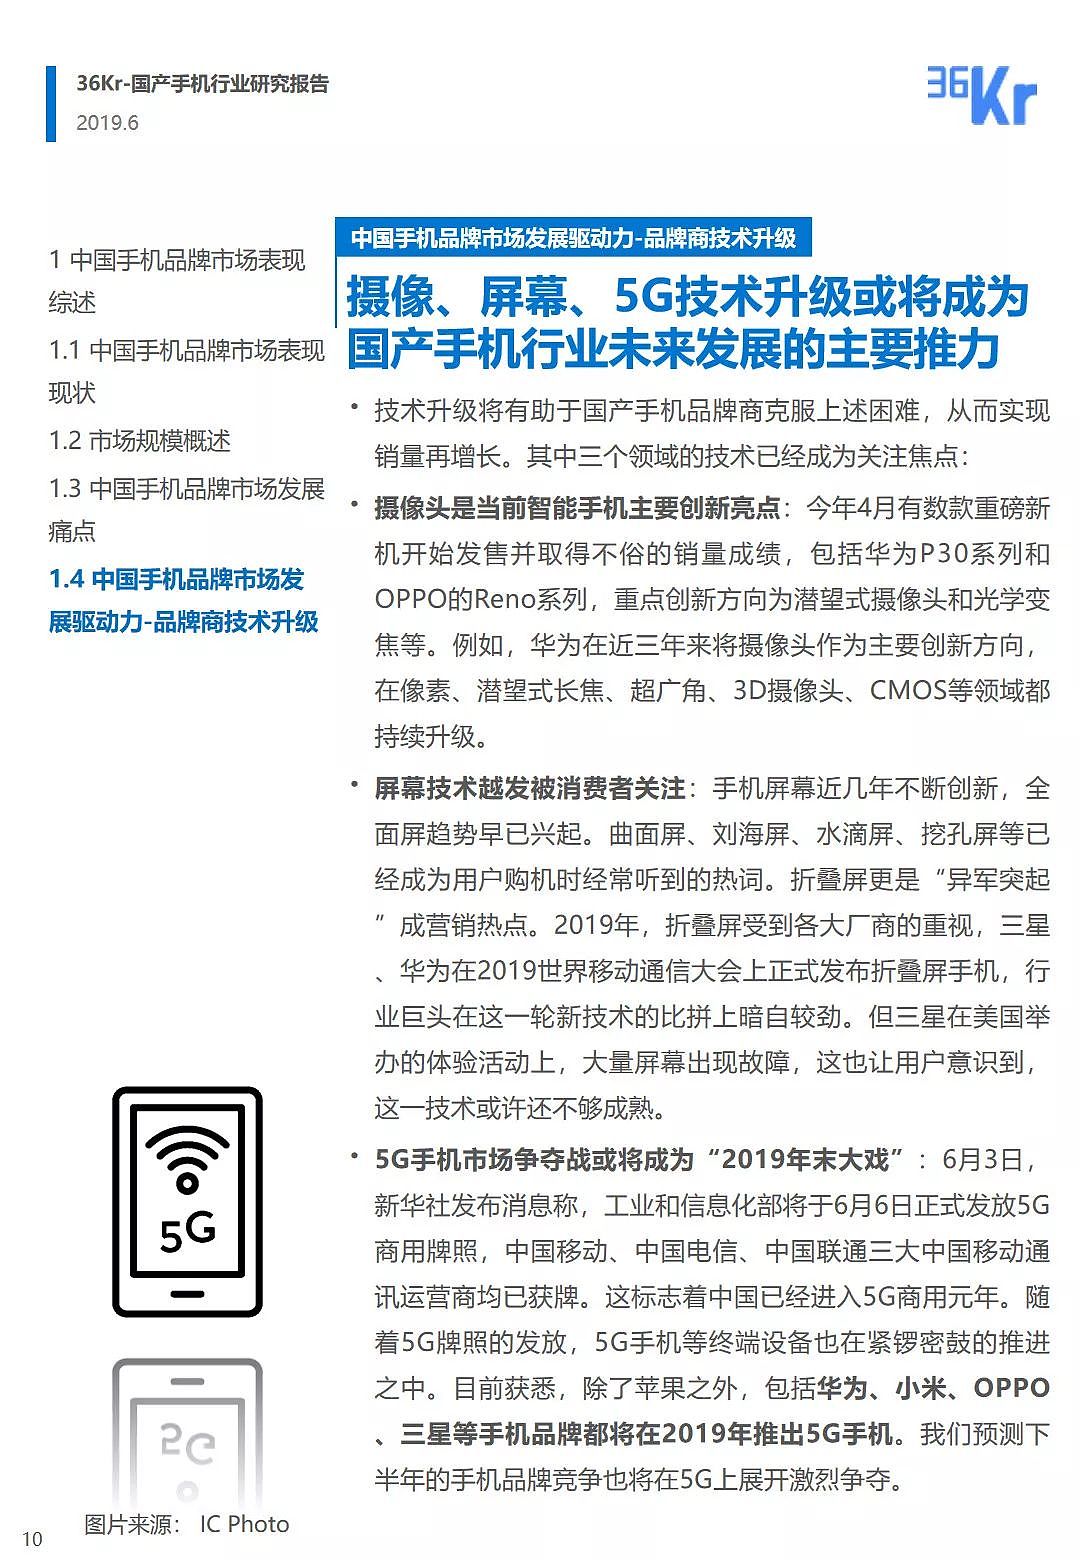 中国手机品牌市场营销研究报告 | 36氪研究 - 11